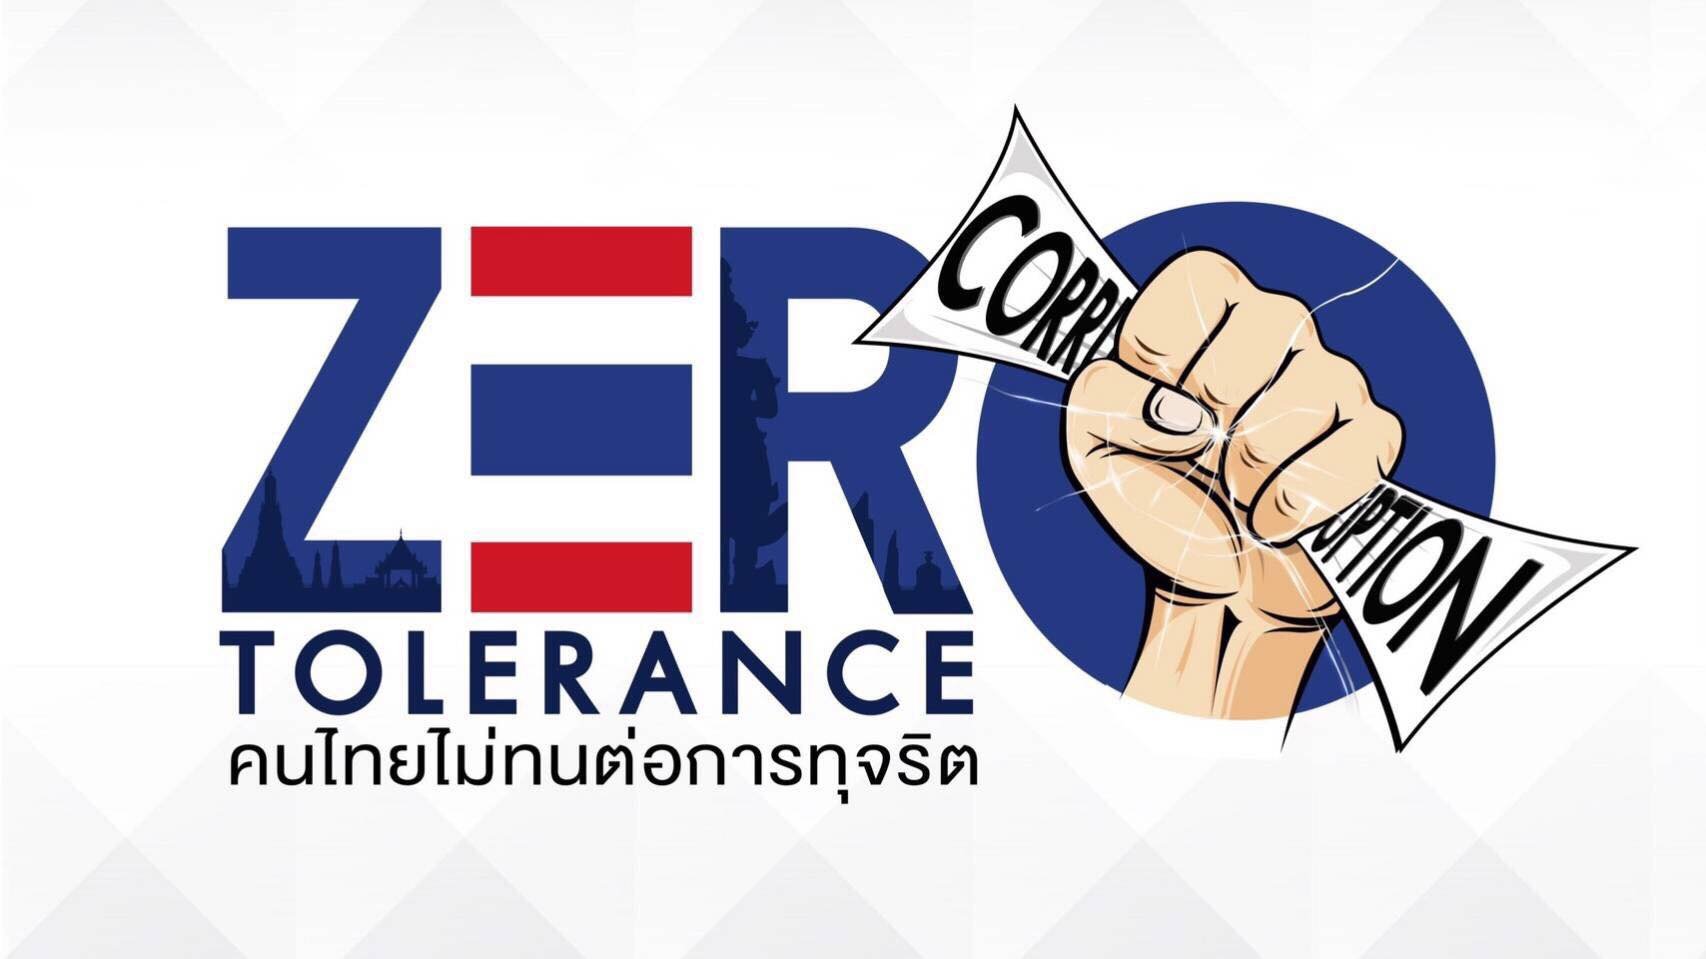 รายการ “คนไทยไม่ทนต่อการทุจริต” วันเสาร์ที่ 2 มิถุนายน 2561 เวลา 18.30-1900 น.